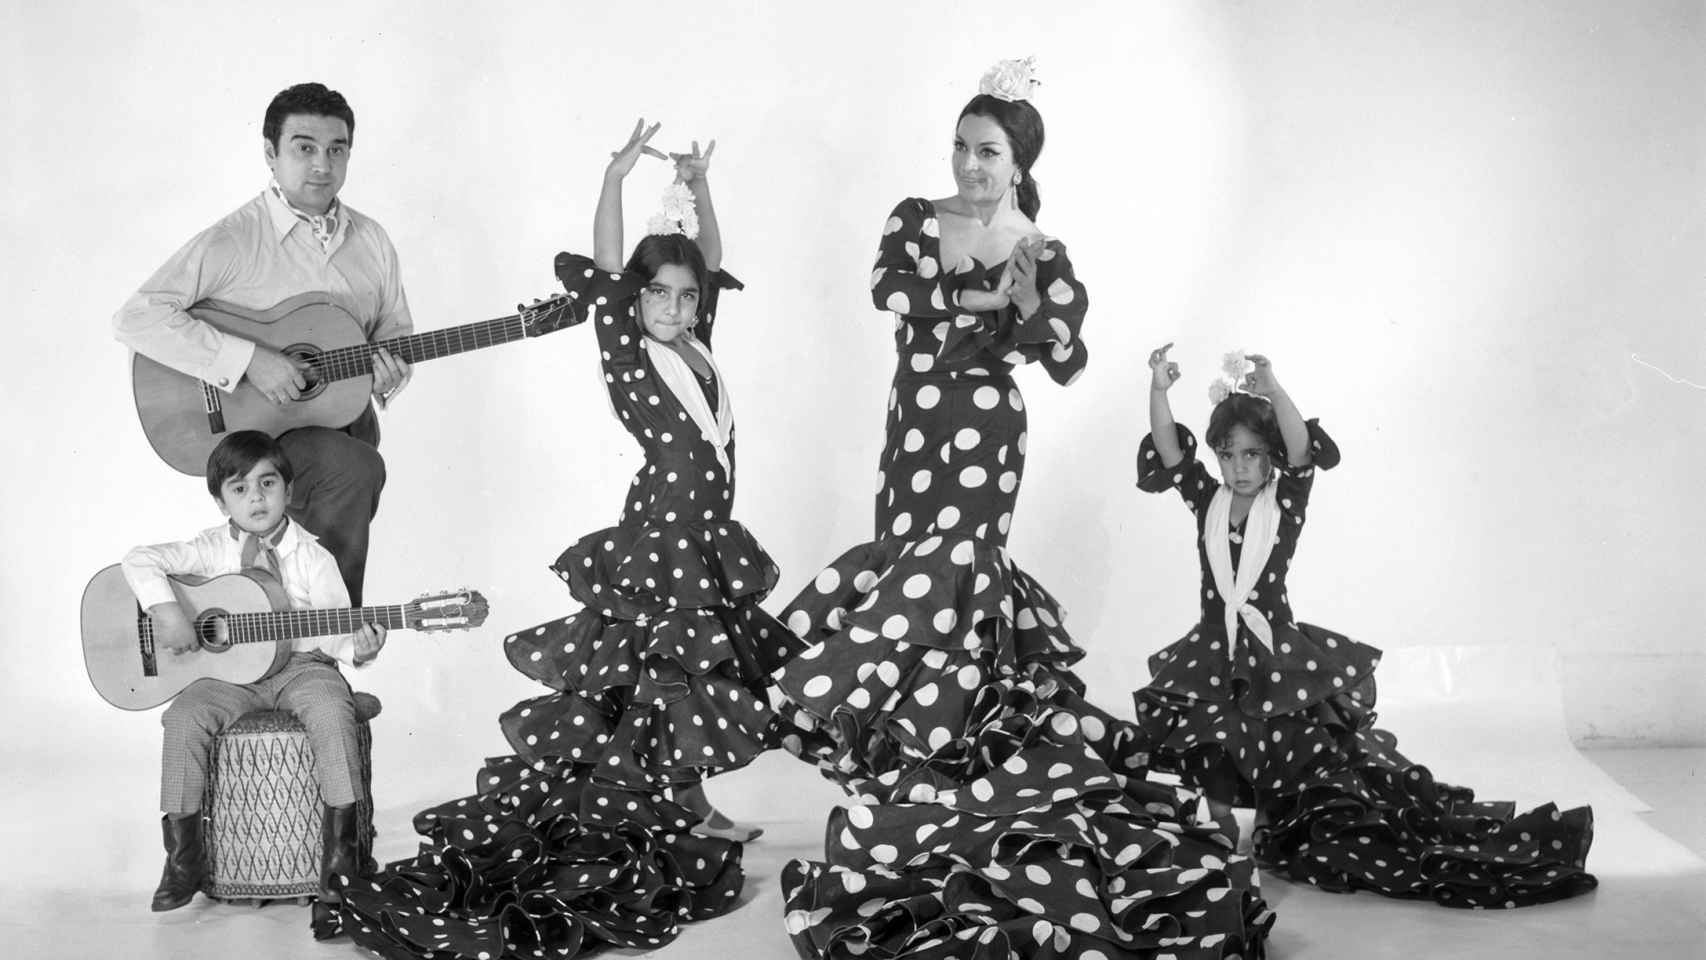 Fotografía de Lola Flores y Antonio González, “El Pescaílla”, con Lolita, Antonio y Rosario realizada en 1966. Pertenece al Archivo del fotógrafo Vicente Ibáñez, cuyos fondos se conservan en la BNE.